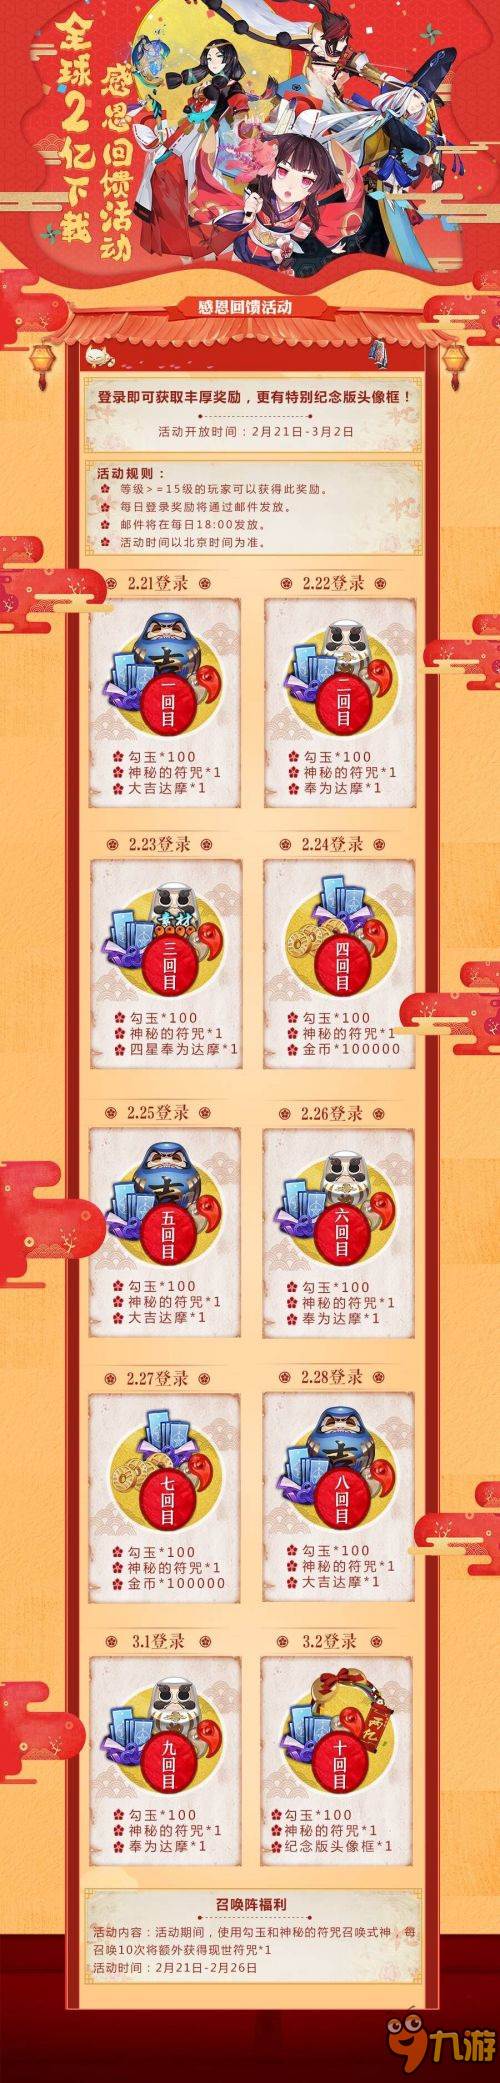 阴阳师2亿下载回馈活动 登录送10张蓝券纪念版头像框